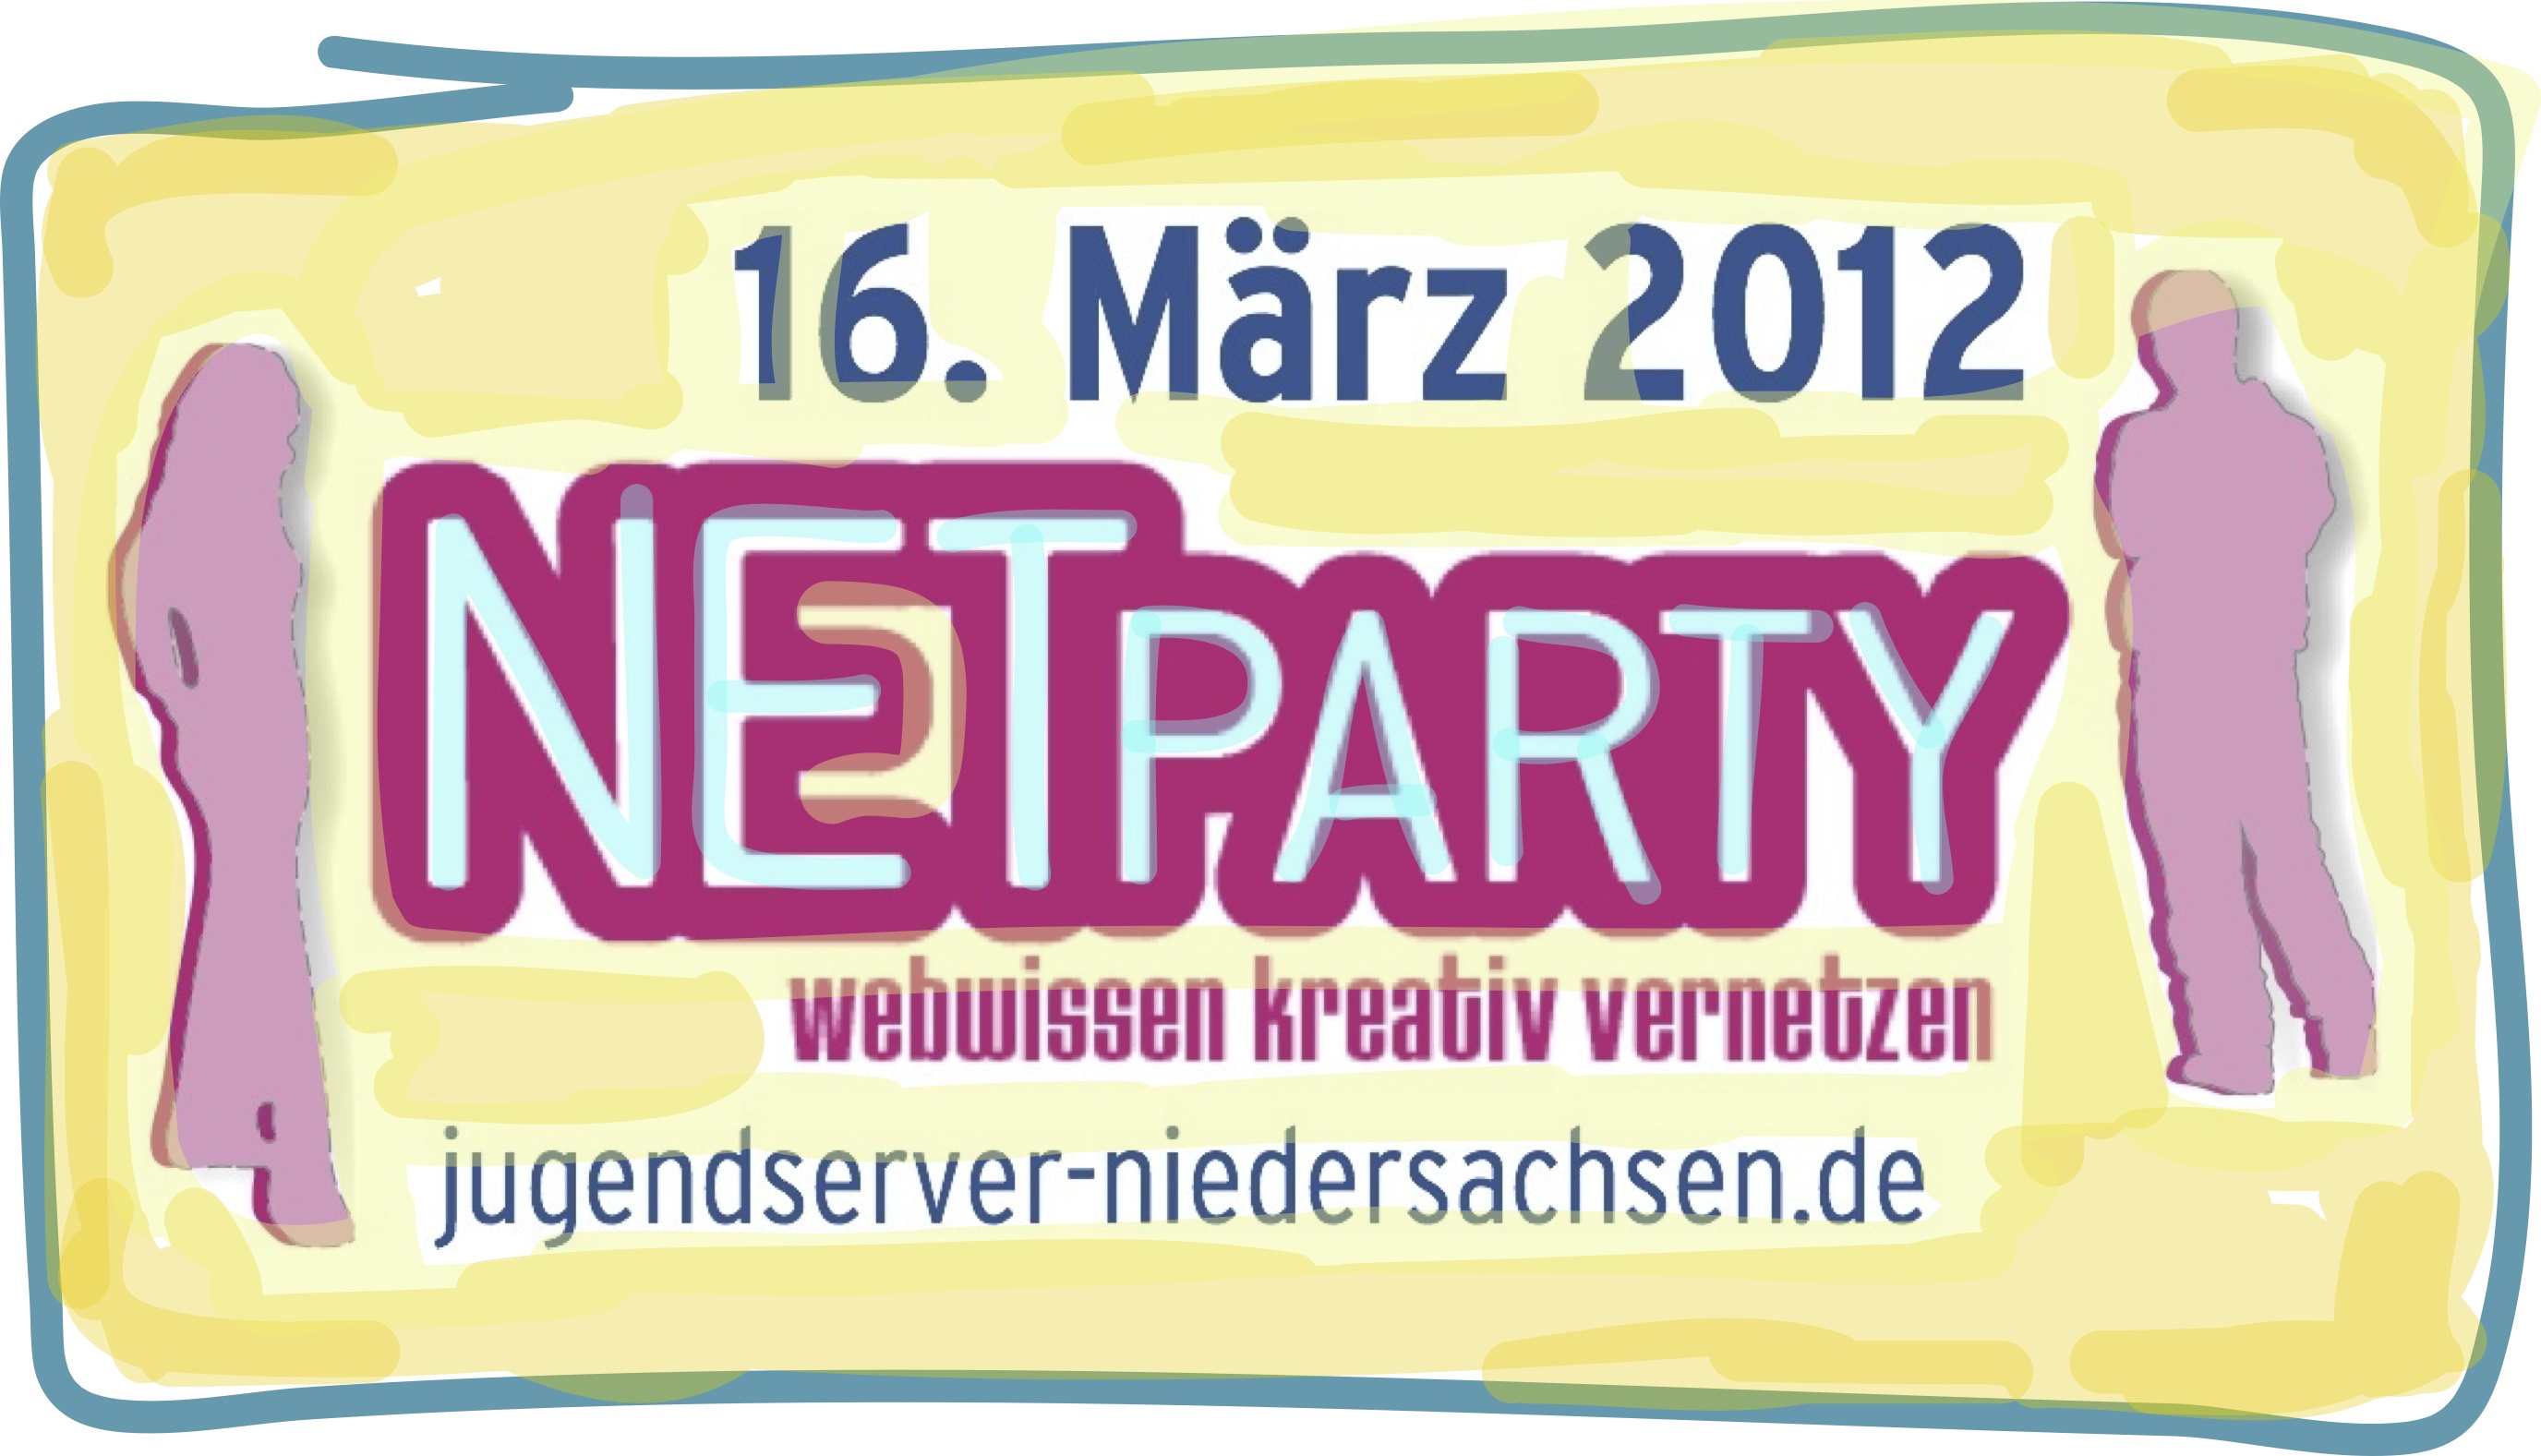 NETPARTY 2012